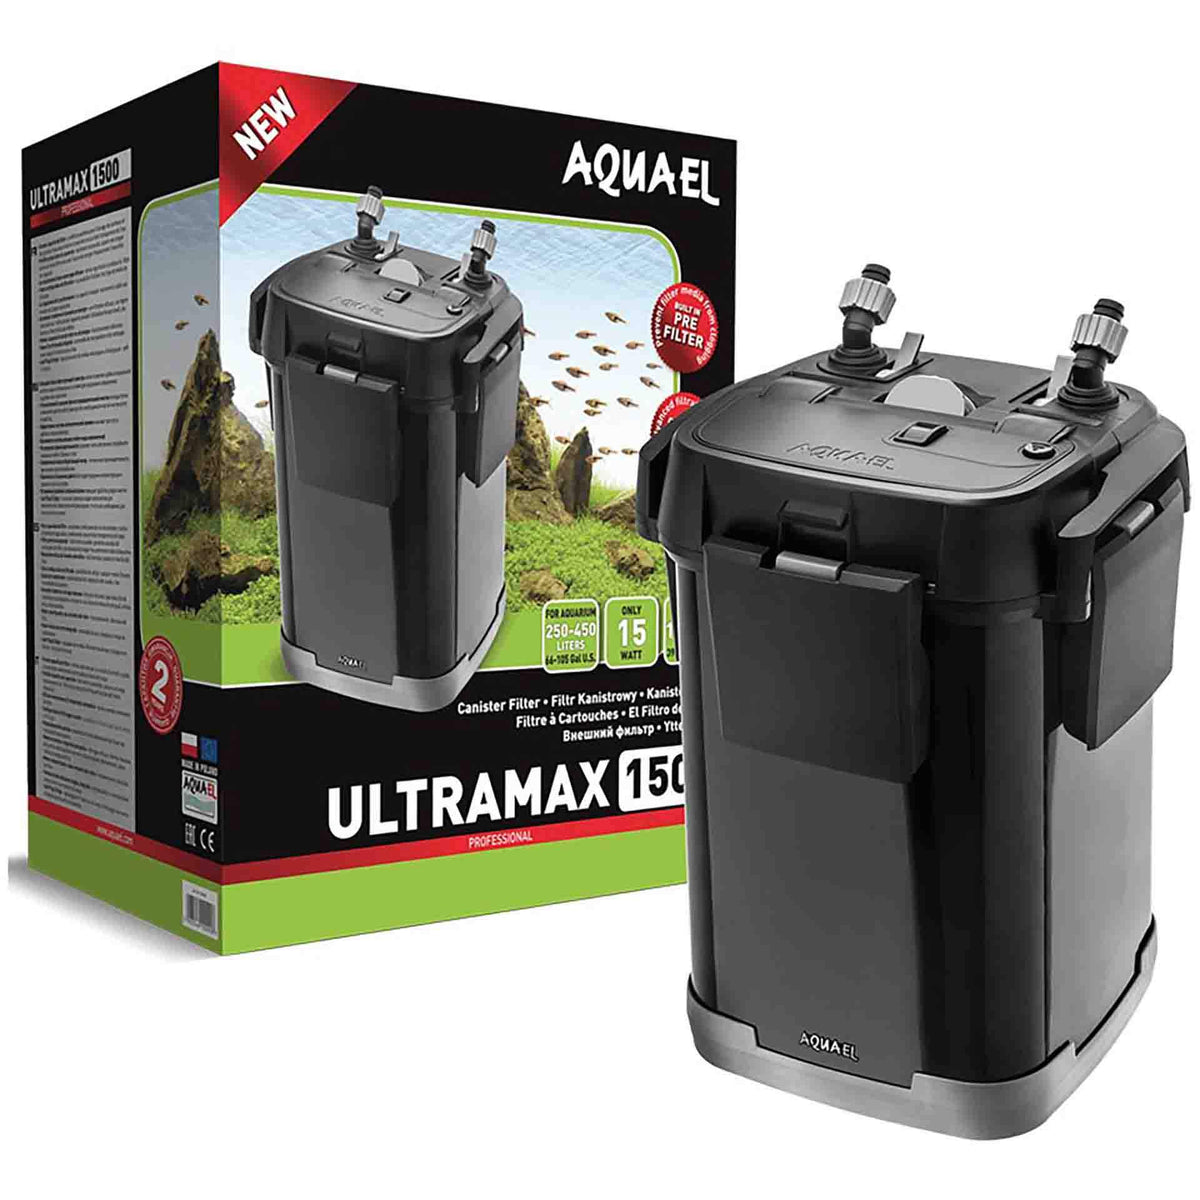 Aquael ULTRAMAX 1500 Canister Filter